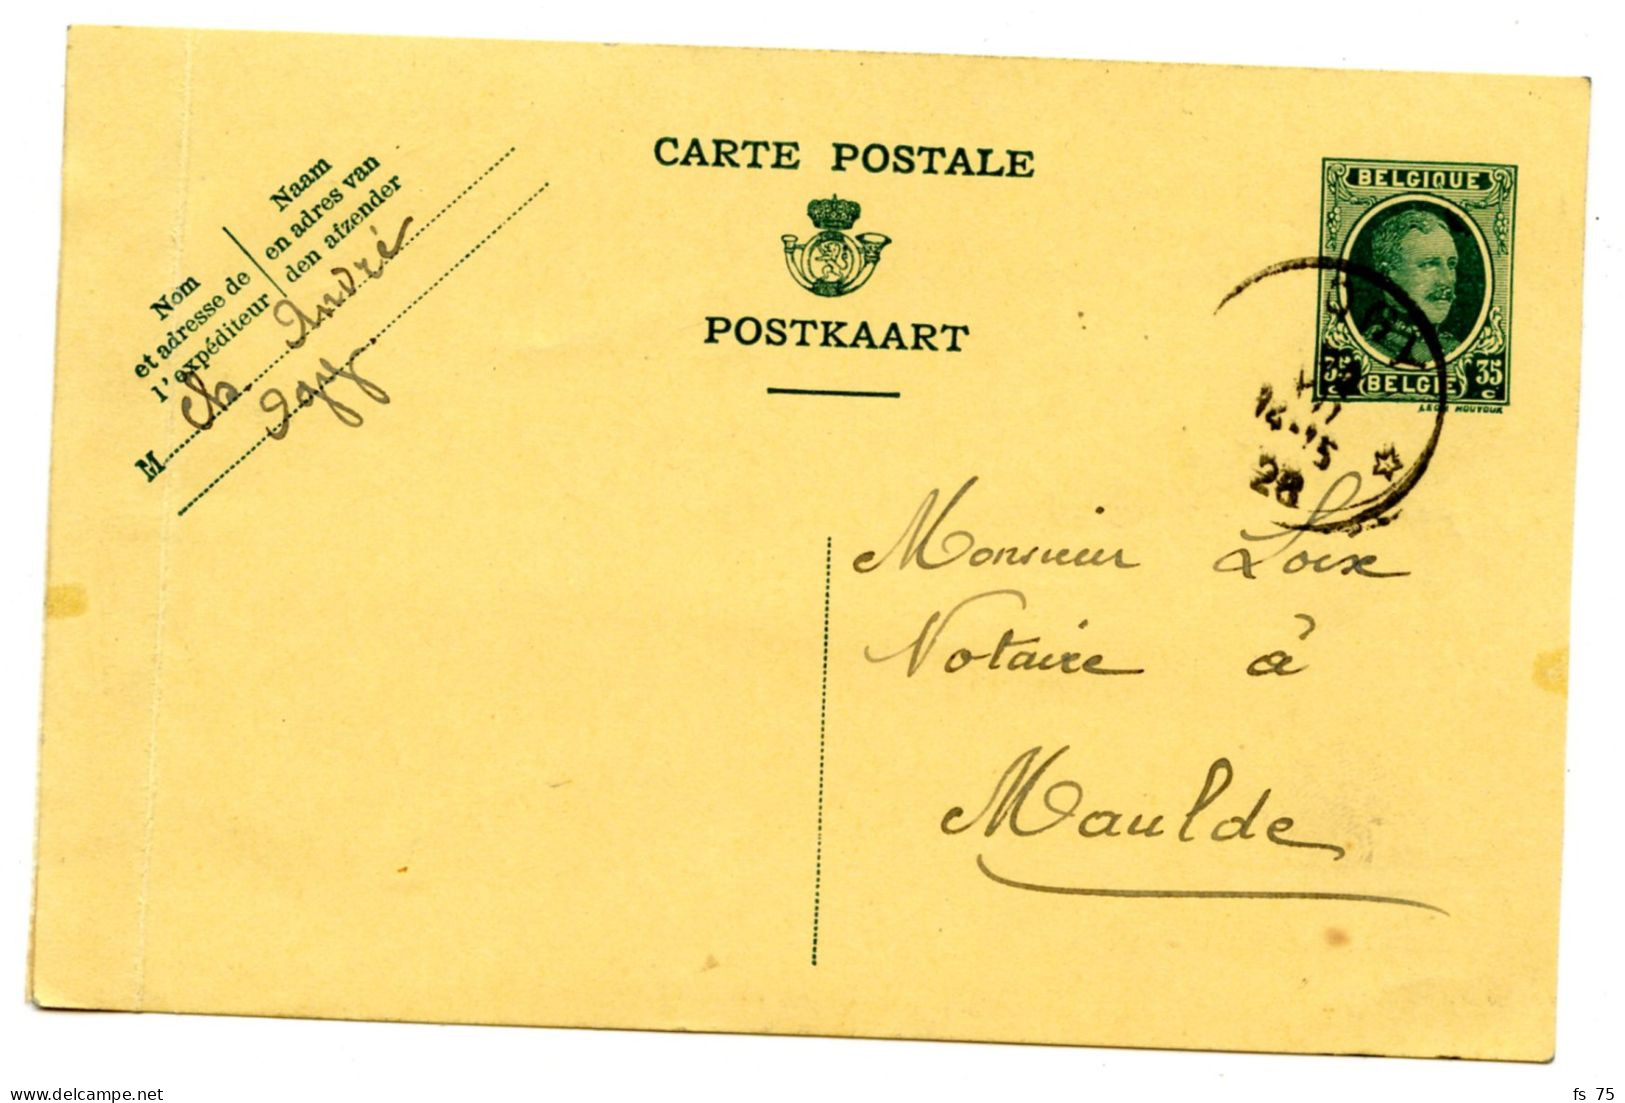 BELGIQUE - SIMPLE CERCLE RELAIS A ETOILES OGY SUR ENTIER CARTE POSTALE 35C HOUYOUX, 1926 - Postmarks With Stars